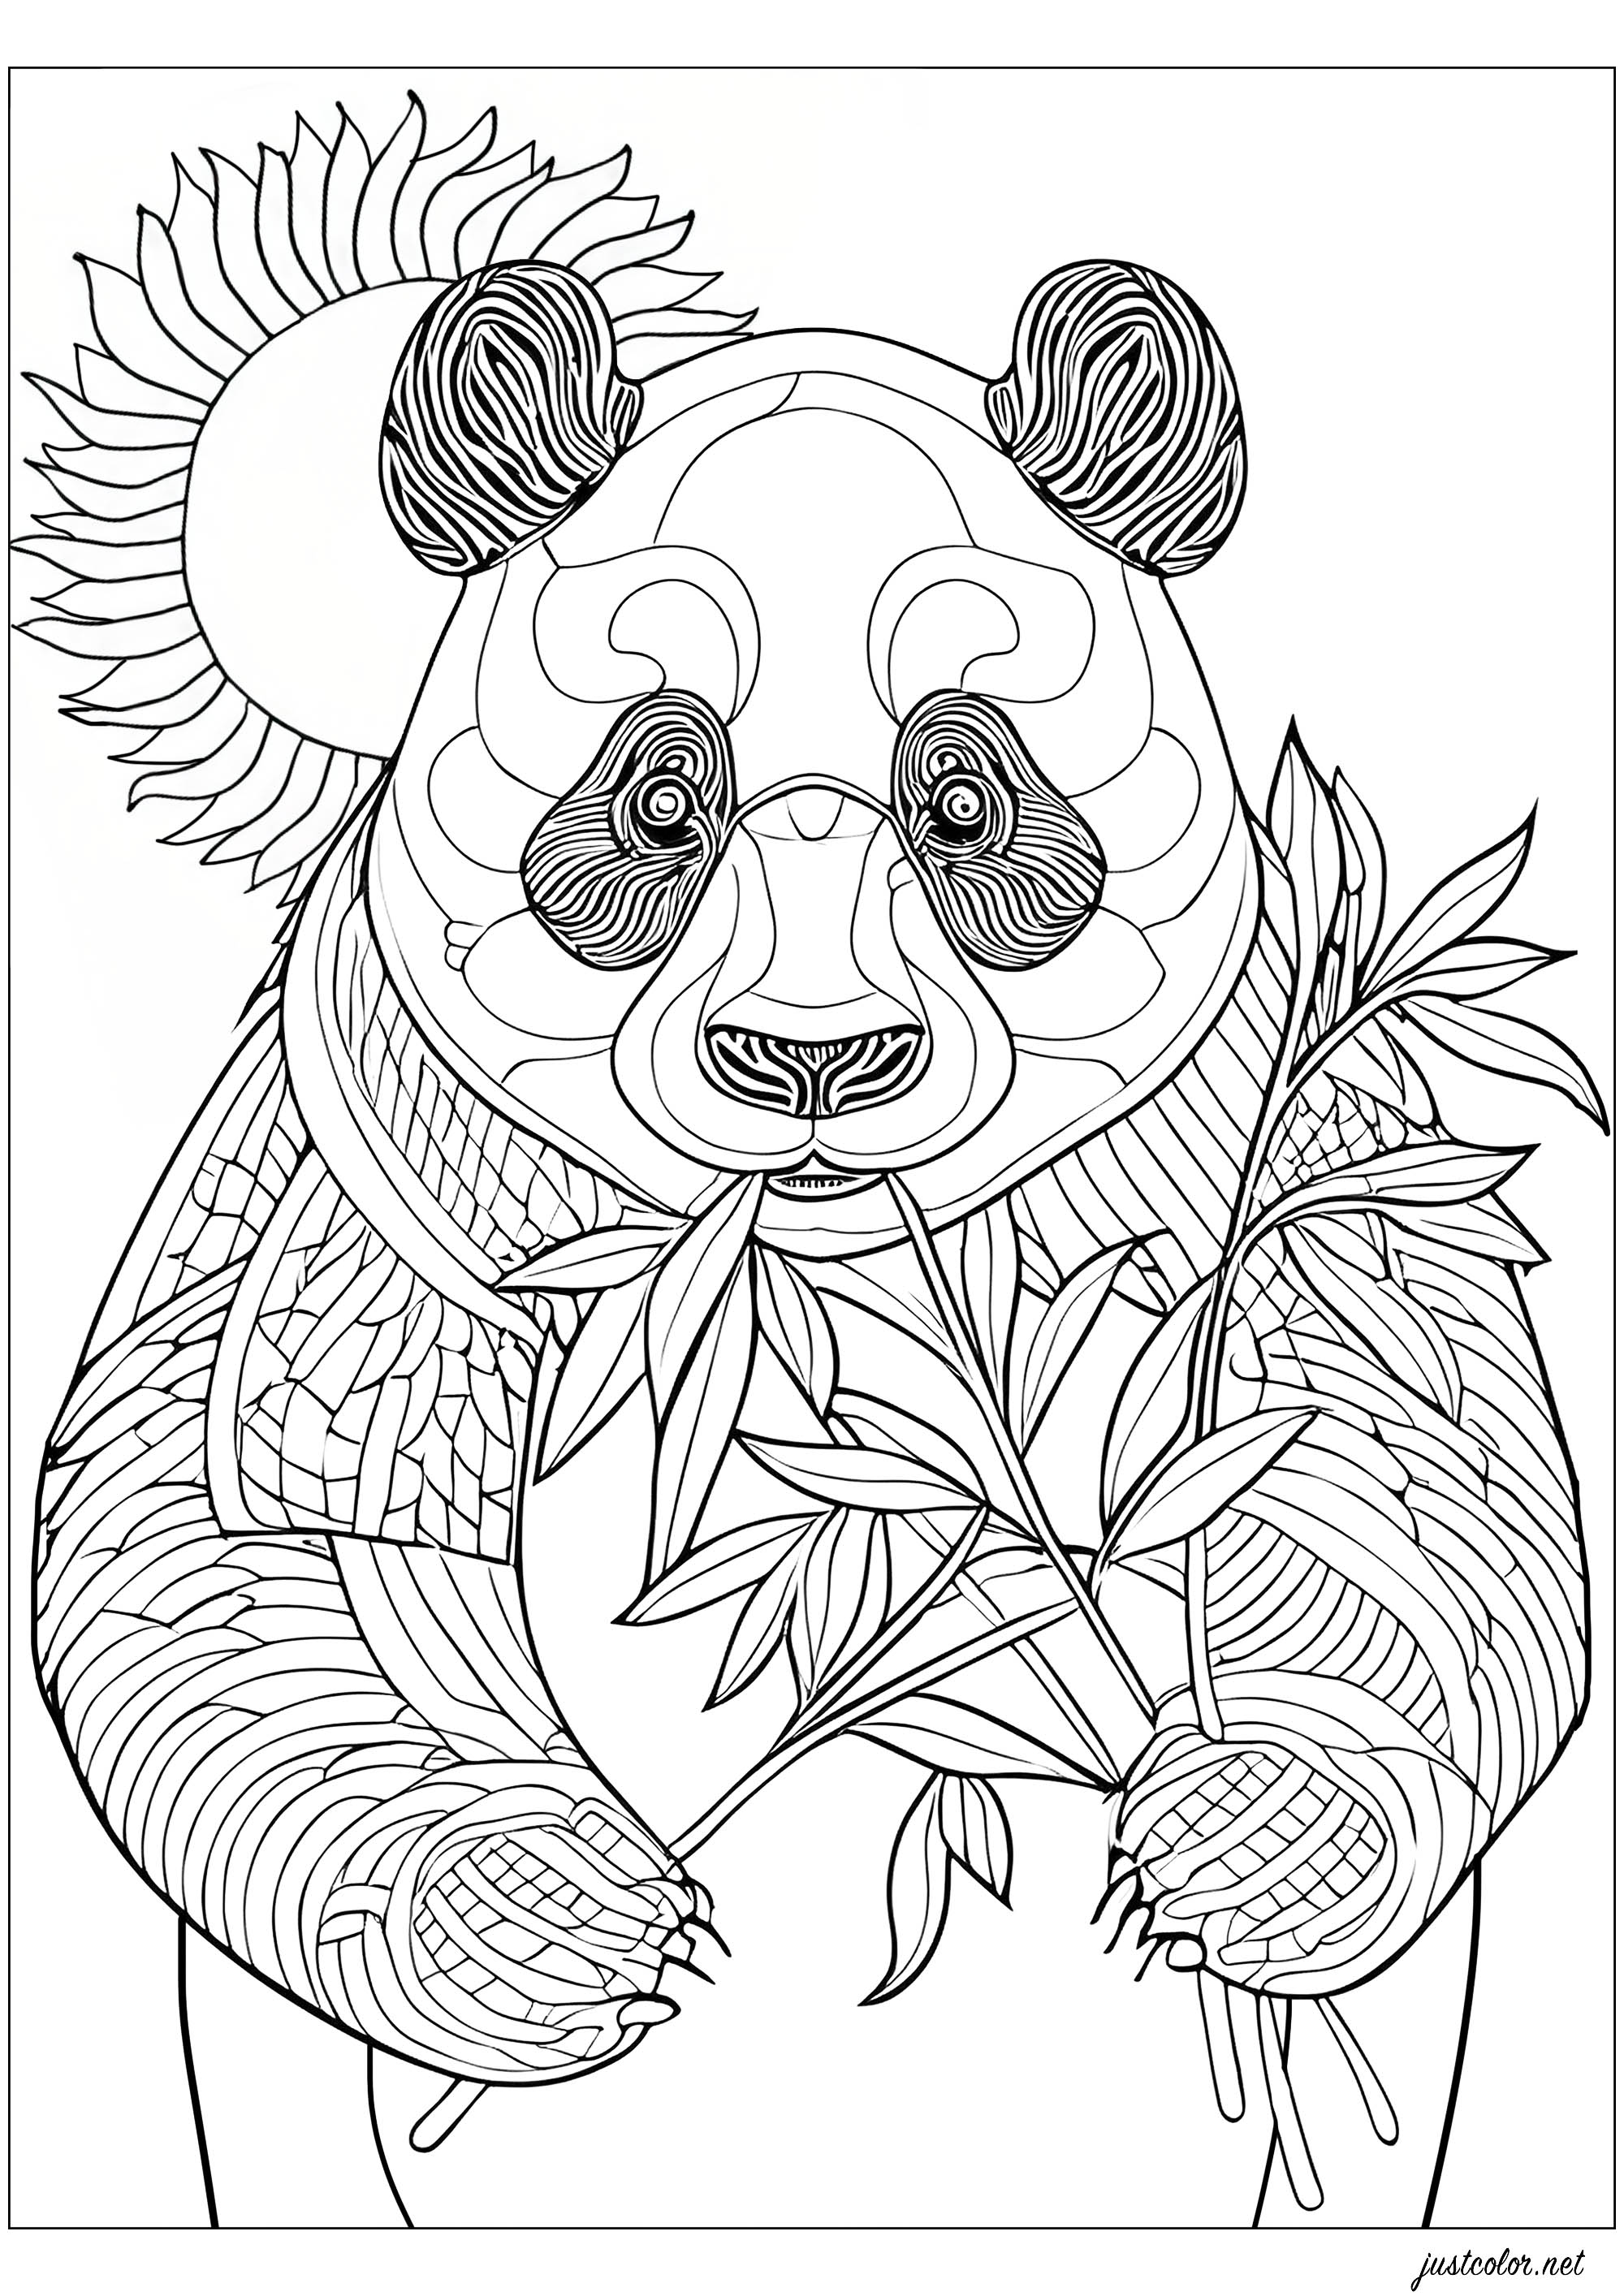 Panda mangeant du bambou, debout. Coloriez également le joli soleil derrière lui